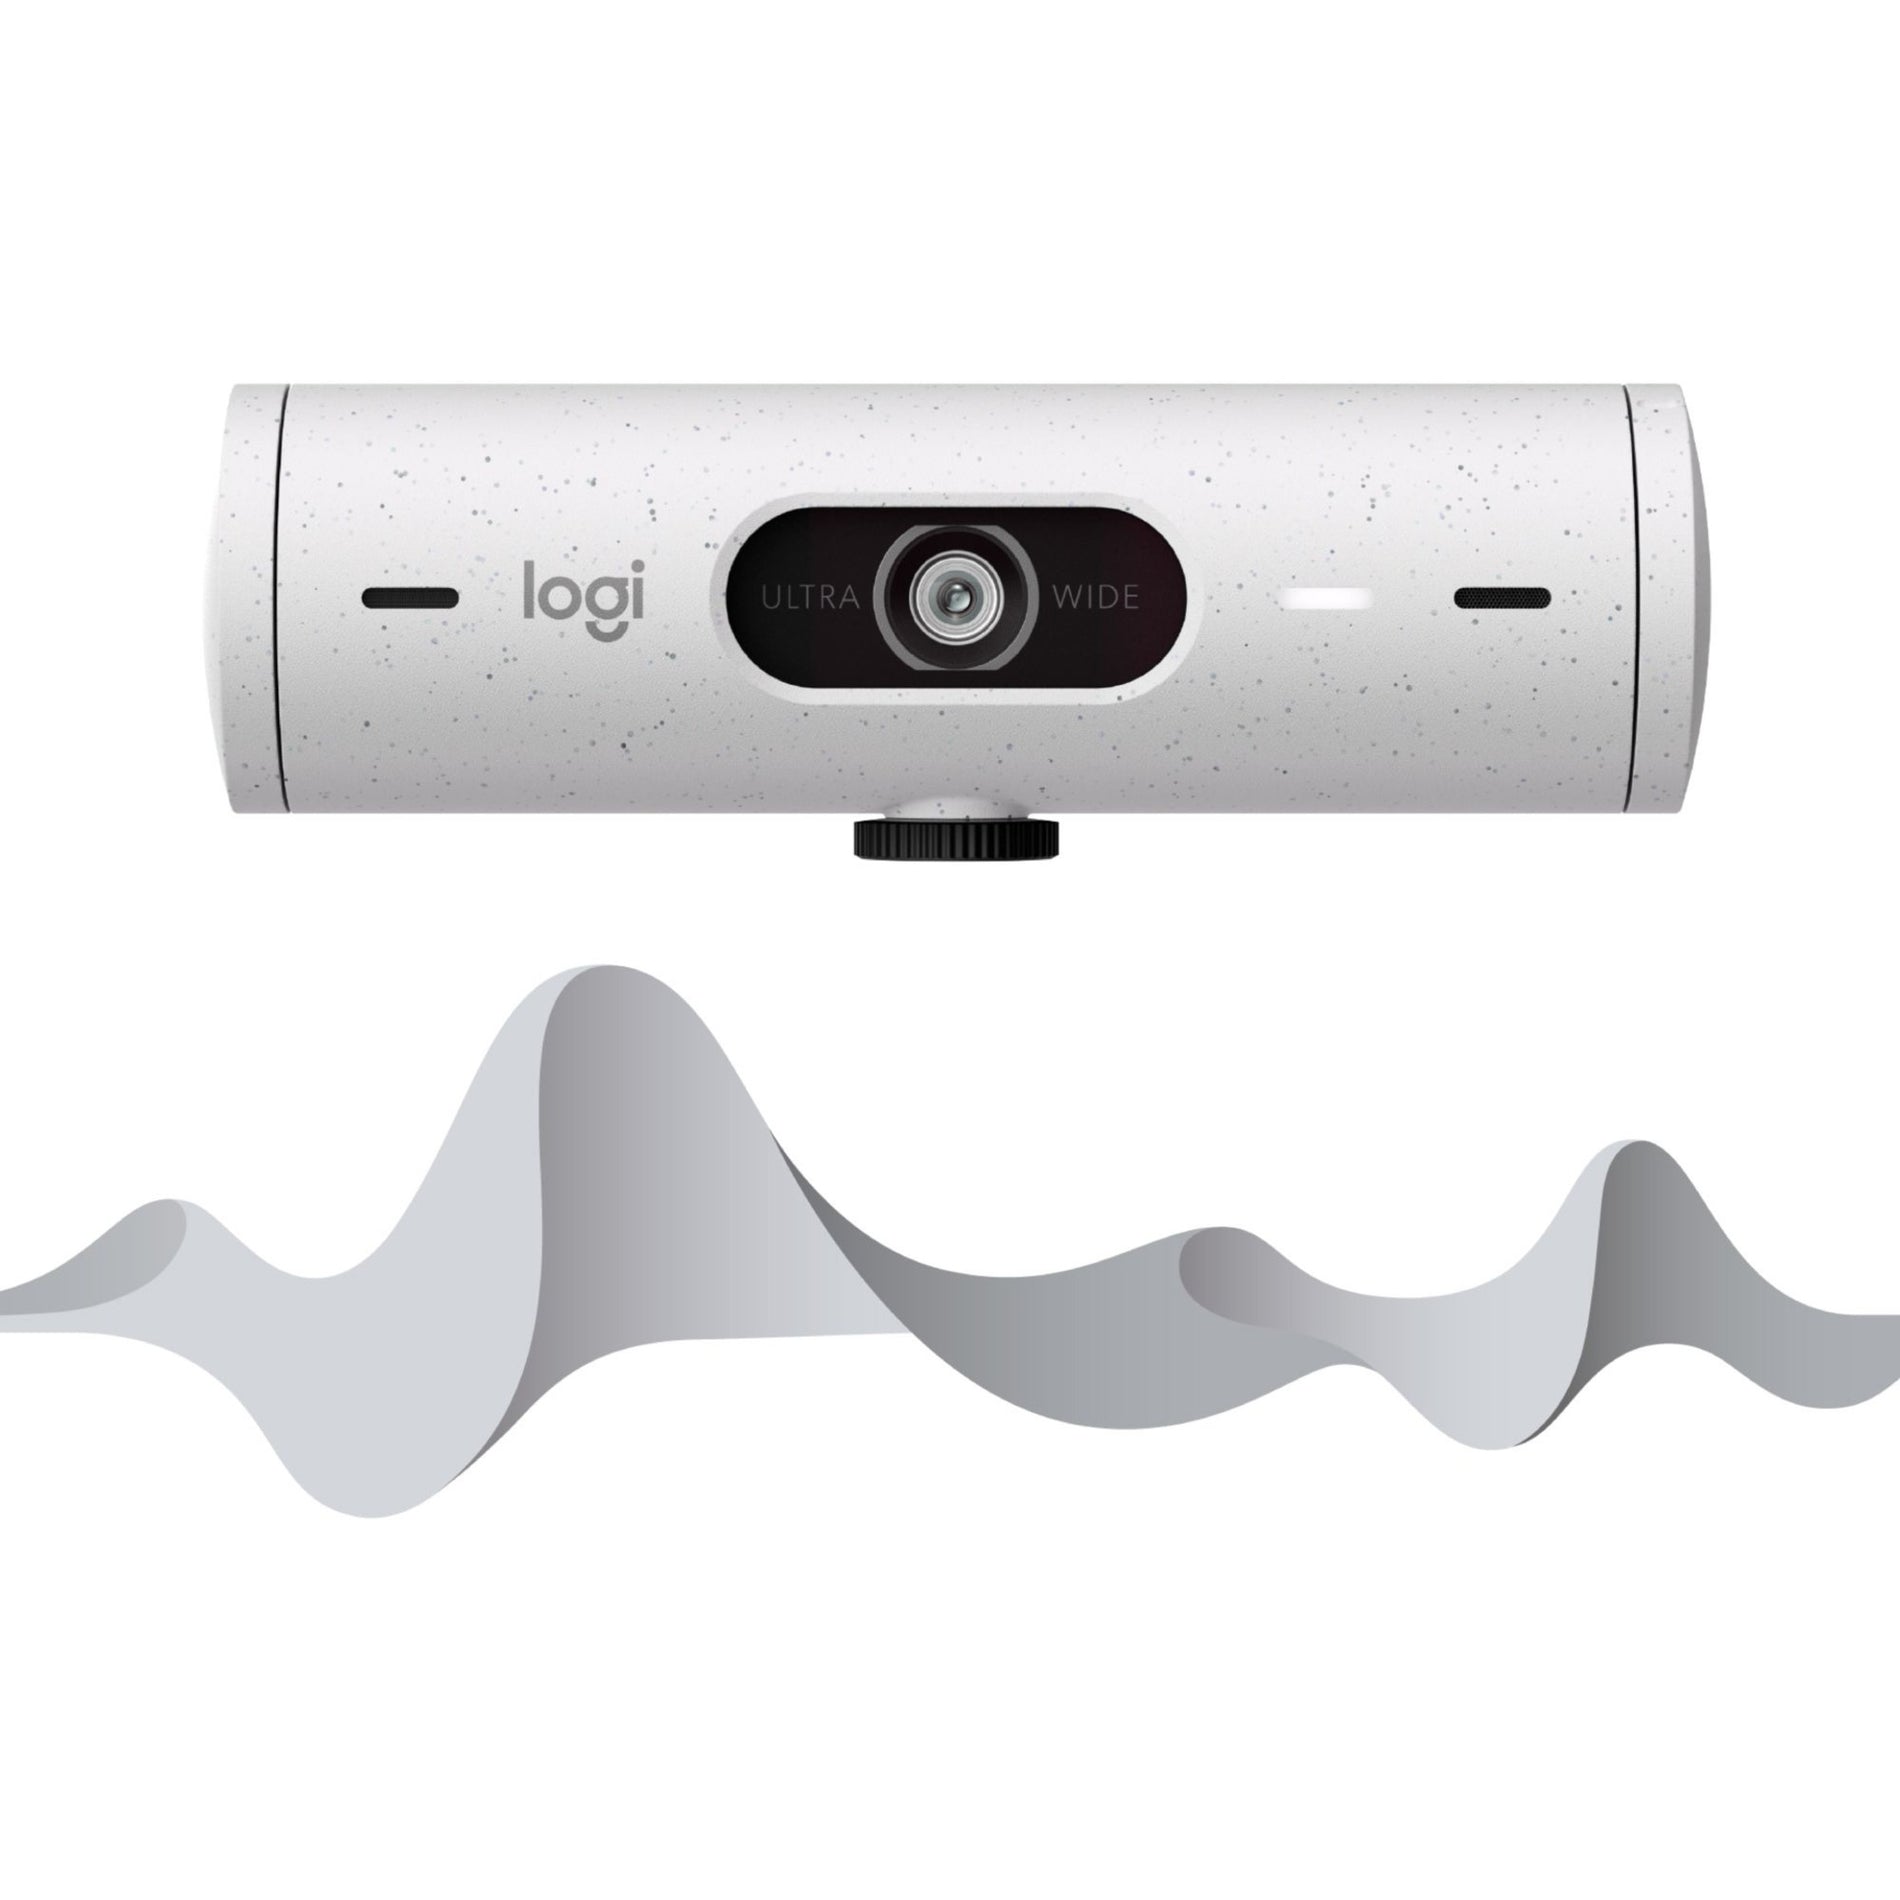 Logitech 960-001427 بريو 500 كاميرا ويب عالية الدقة كاملة الوضوح ، بدقة 4 ميجابكسل ، 60 إطار في الثانية ، USB من النوع C ، أبيض قاتم